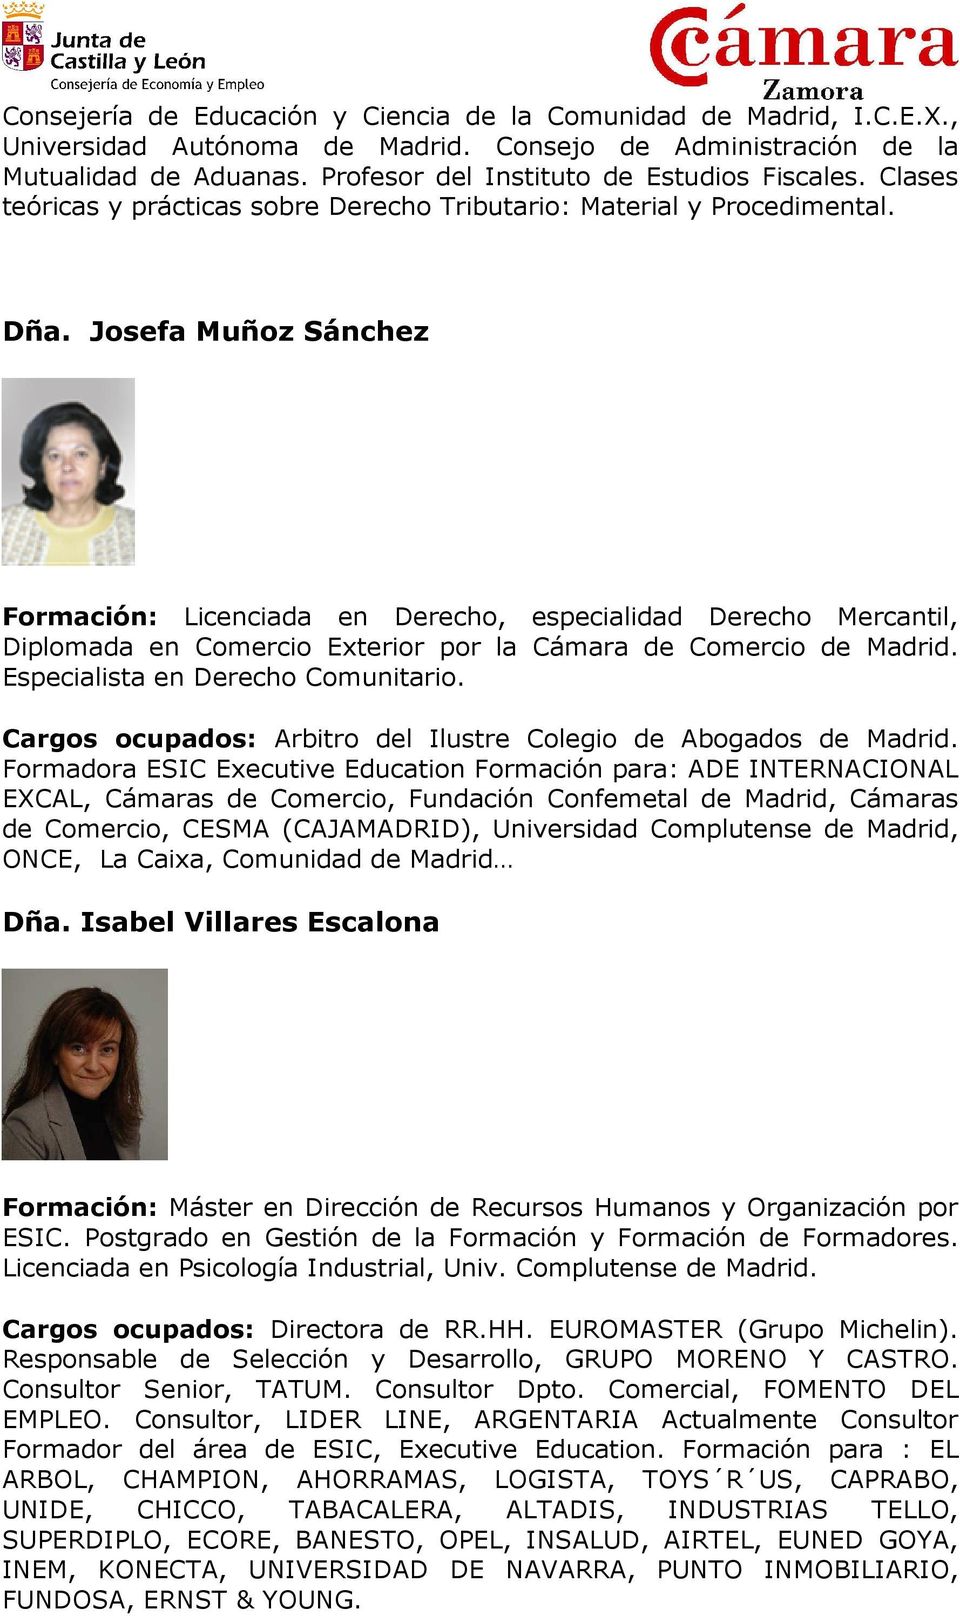 Josefa Muñoz Sánchez Formación: Licenciada en Derecho, especialidad Derecho Mercantil, Diplomada en Comercio Exterior por la Cámara de Comercio de Madrid. Especialista en Derecho Comunitario.